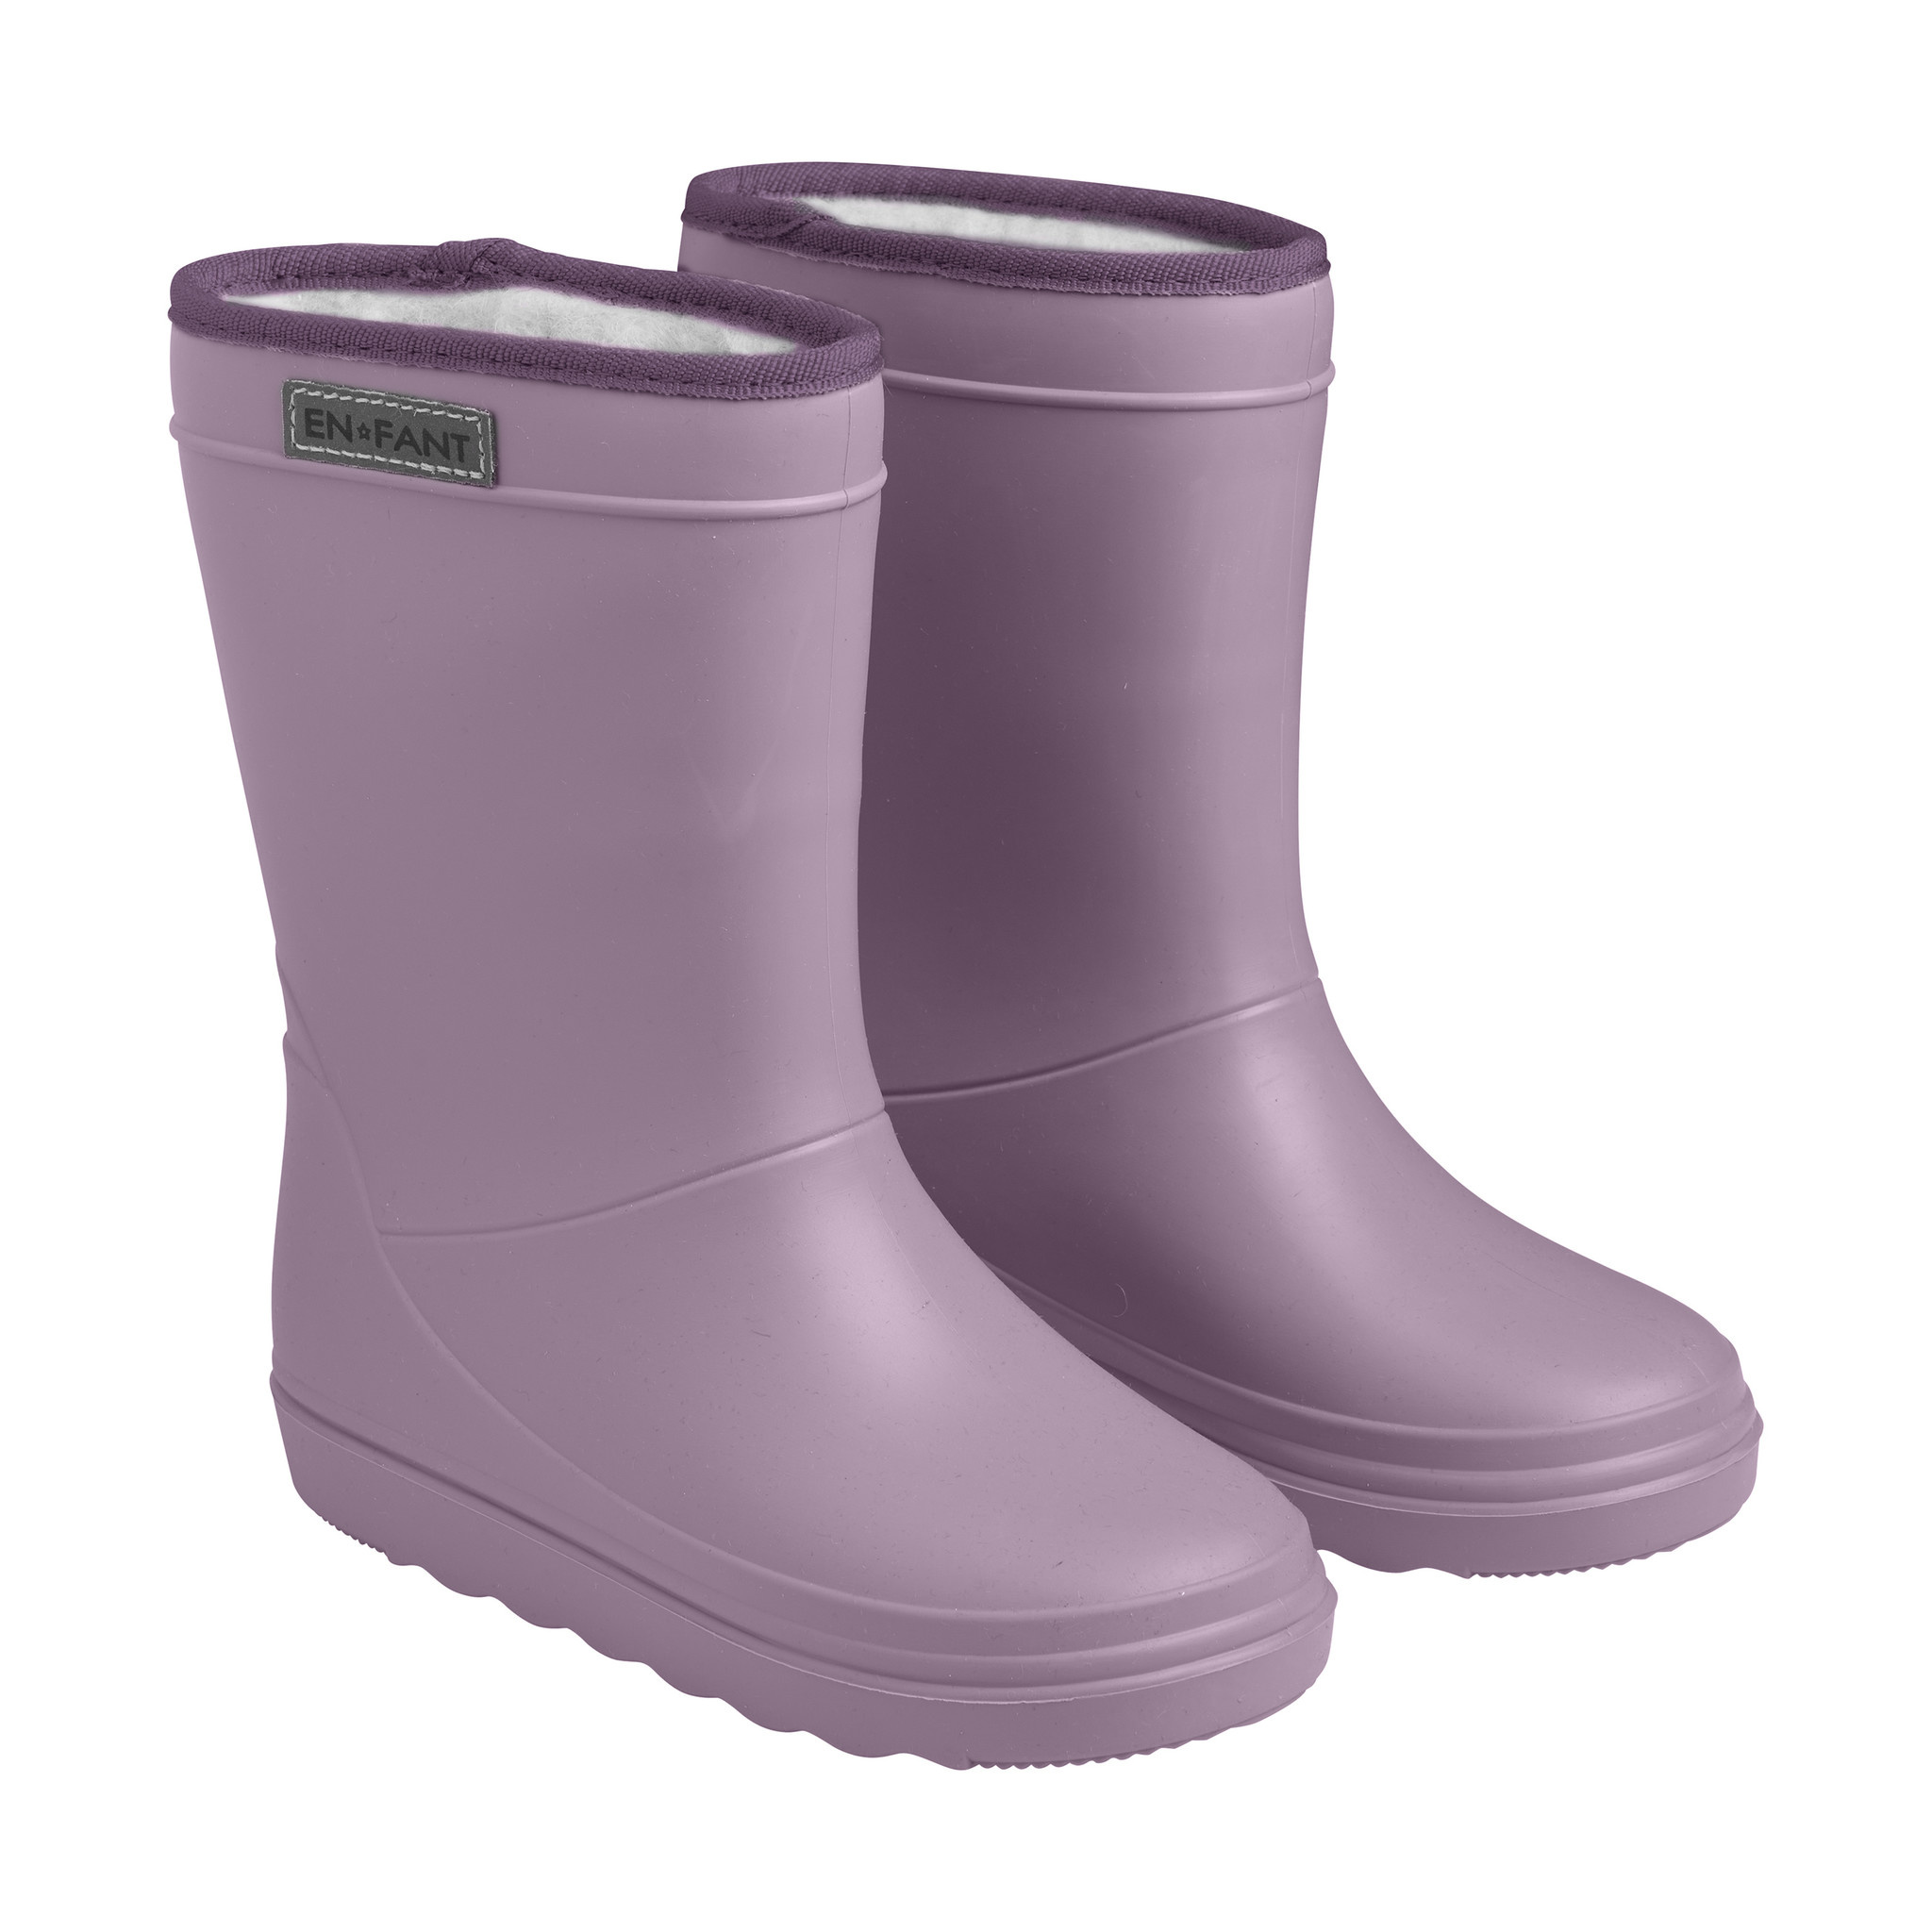 gevoerde regenlaarzen volwassenen - thermo boots print - 6405 - paars - Milck